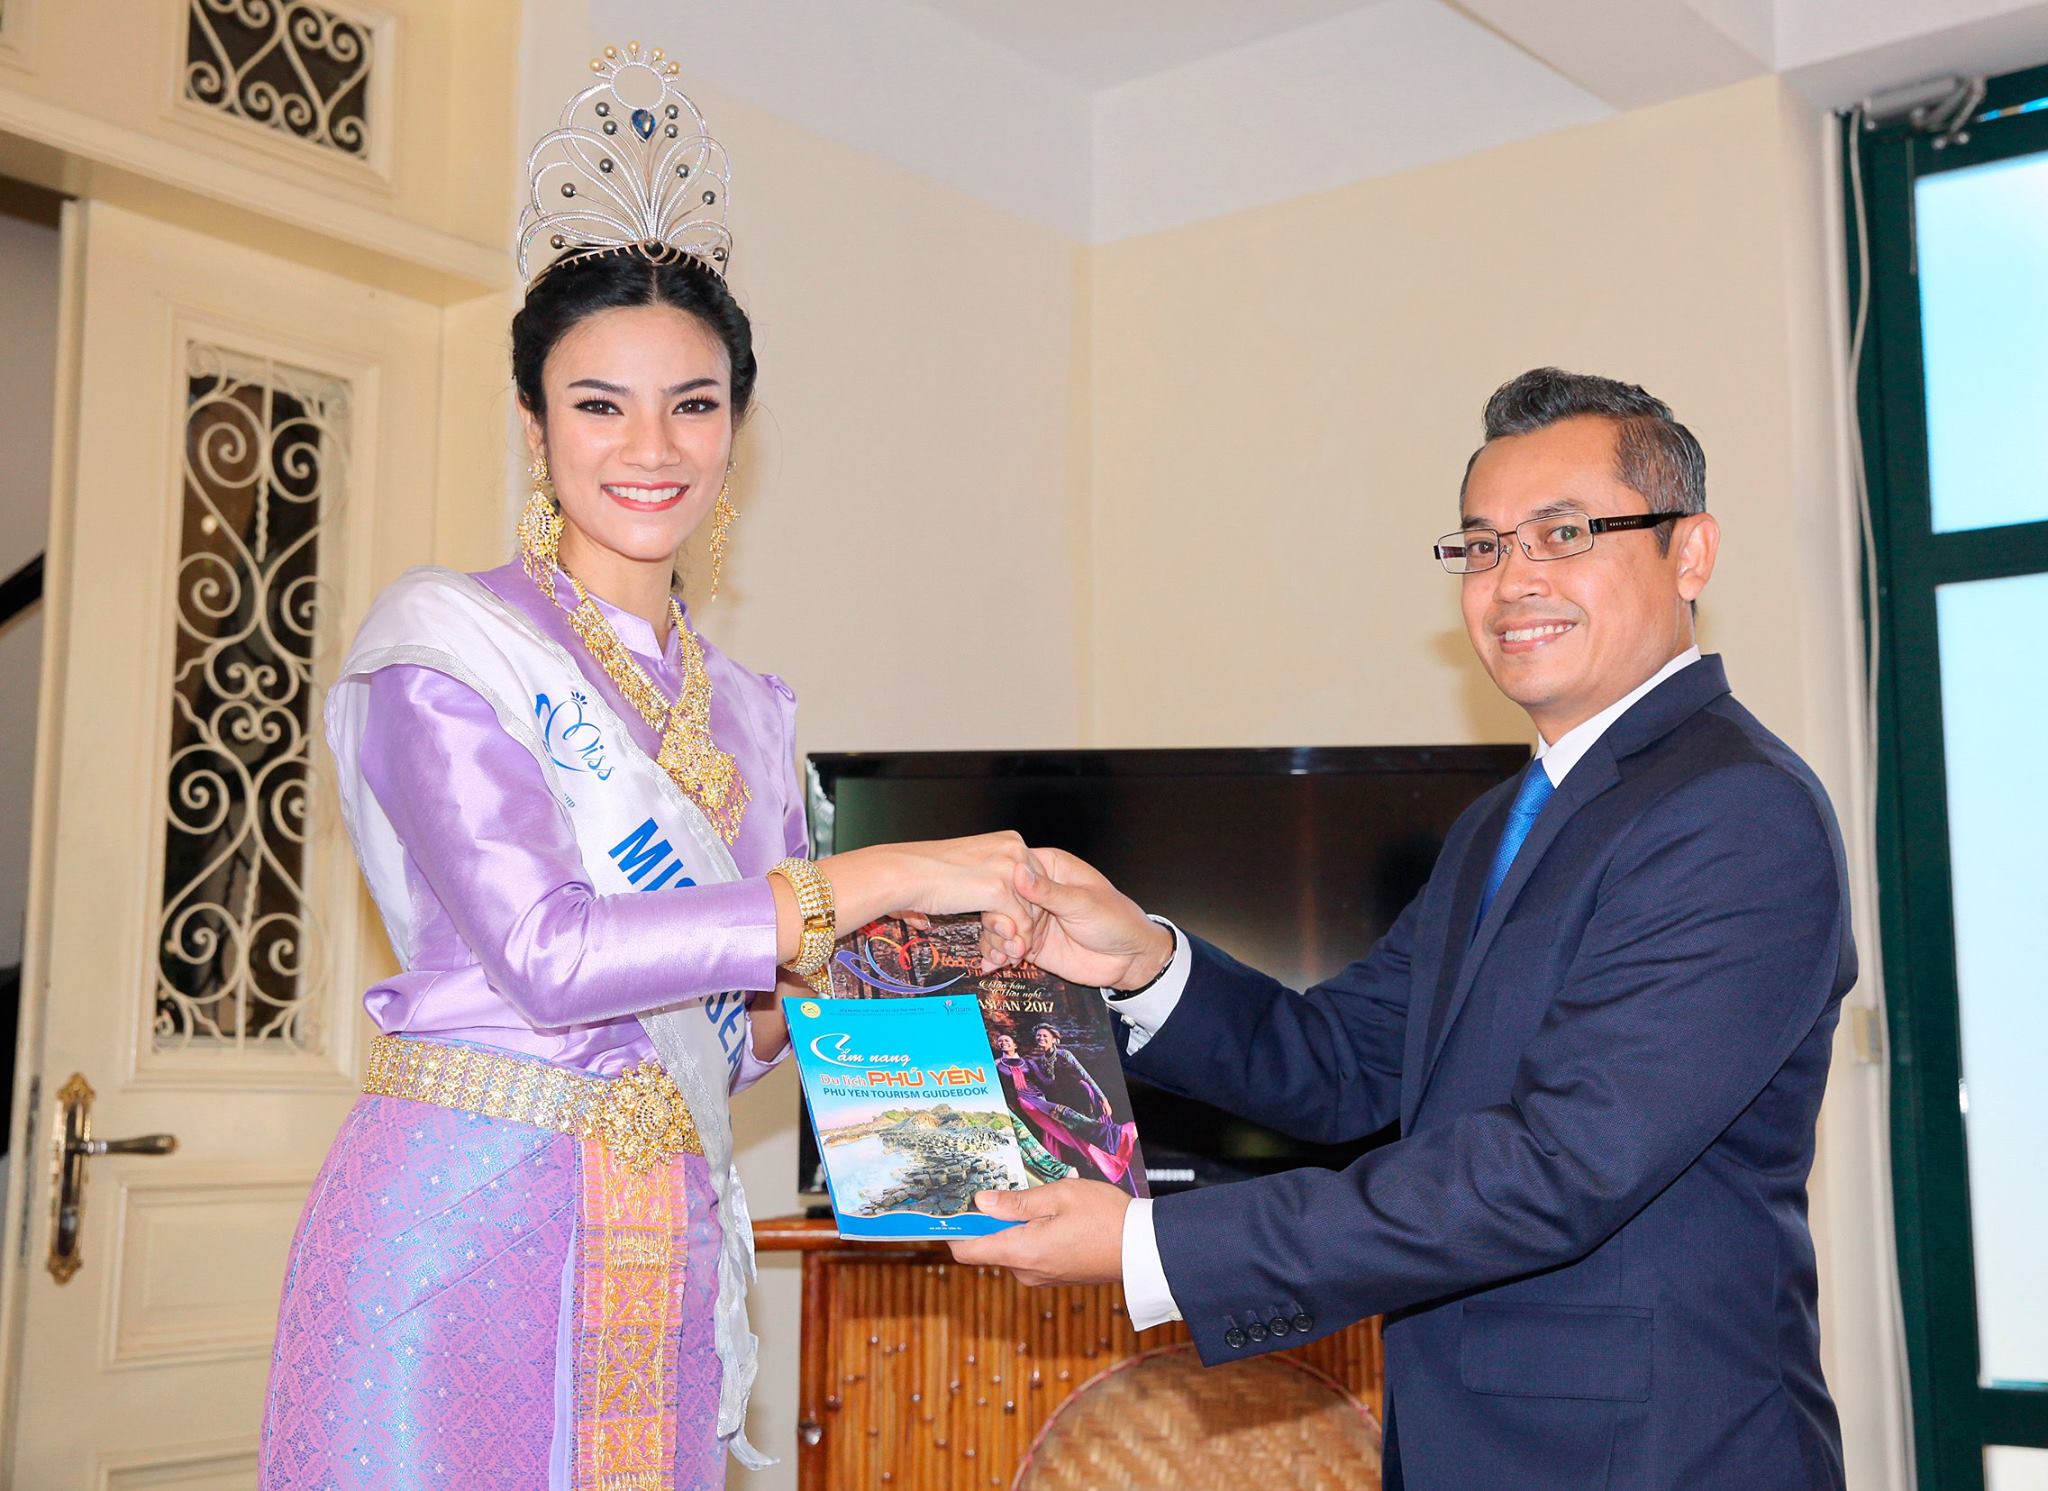 Hoa hậu Nuttanan Naree người Thái Lan tặng những ấn phẩm truyền thông chính thức cho Tham tán/ Phó đại sứ Malaysia Roslan Bin Sharif